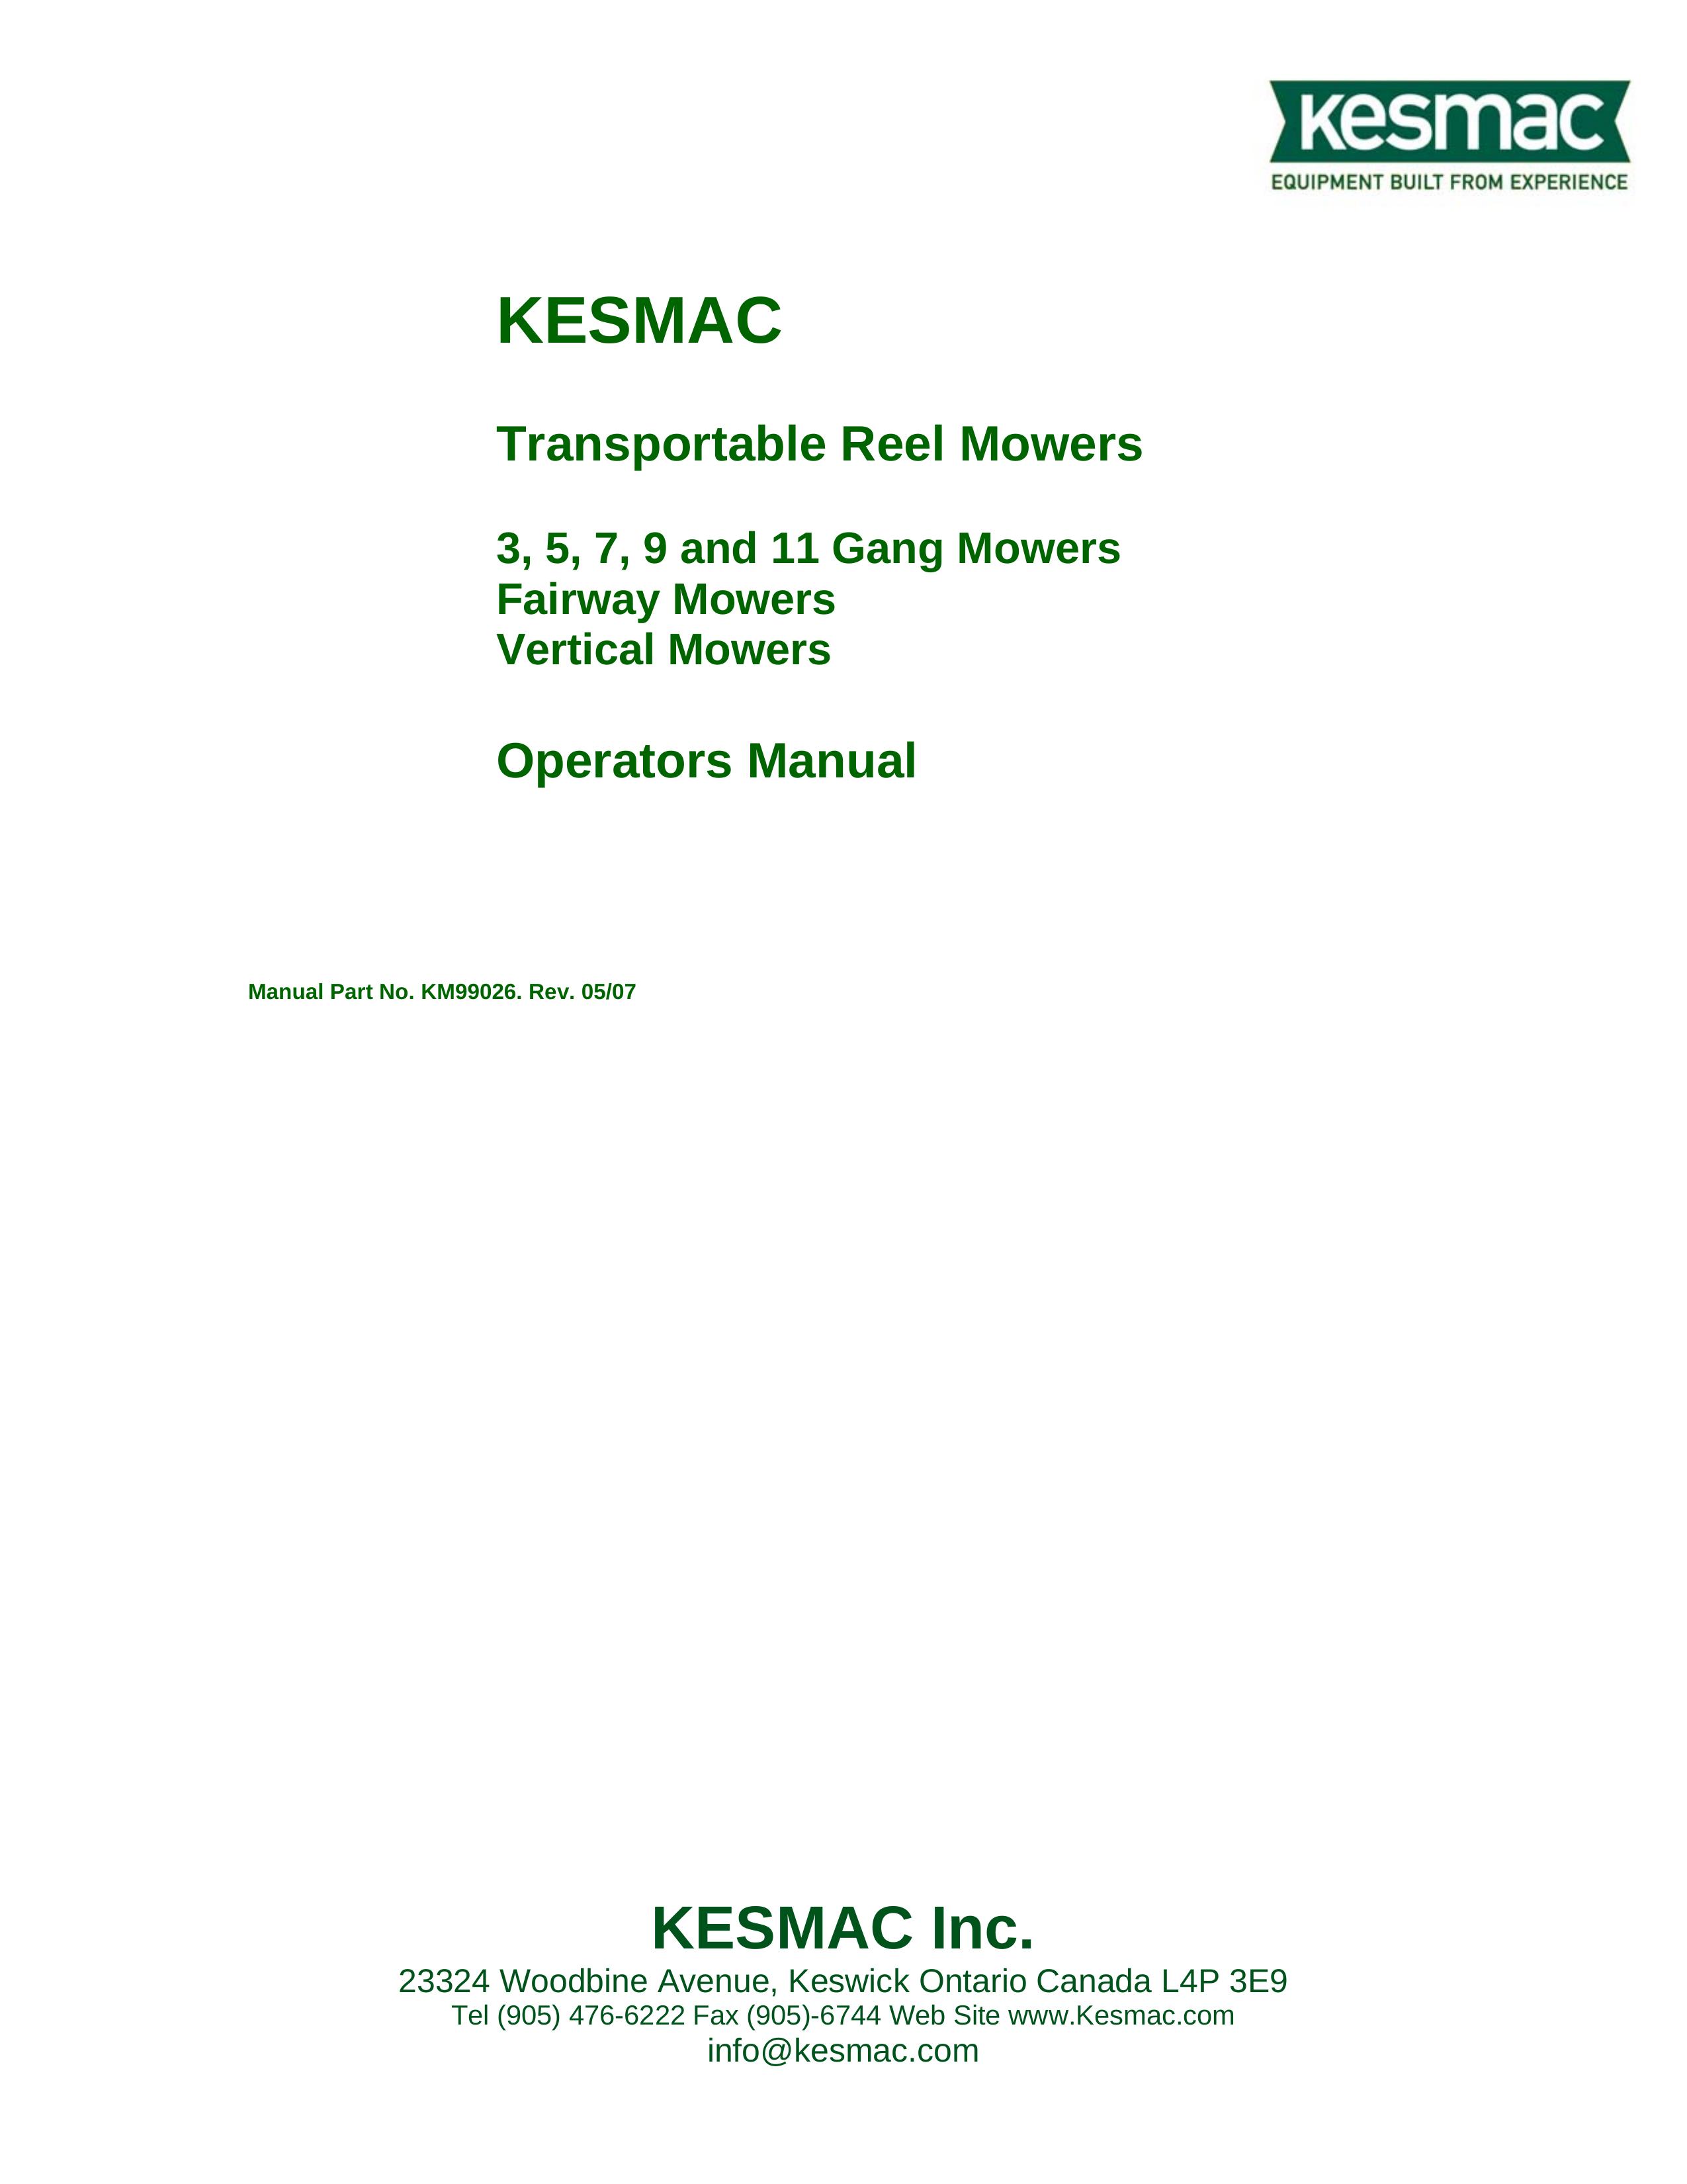 Kenmore 9 Lawn Mower User Manual